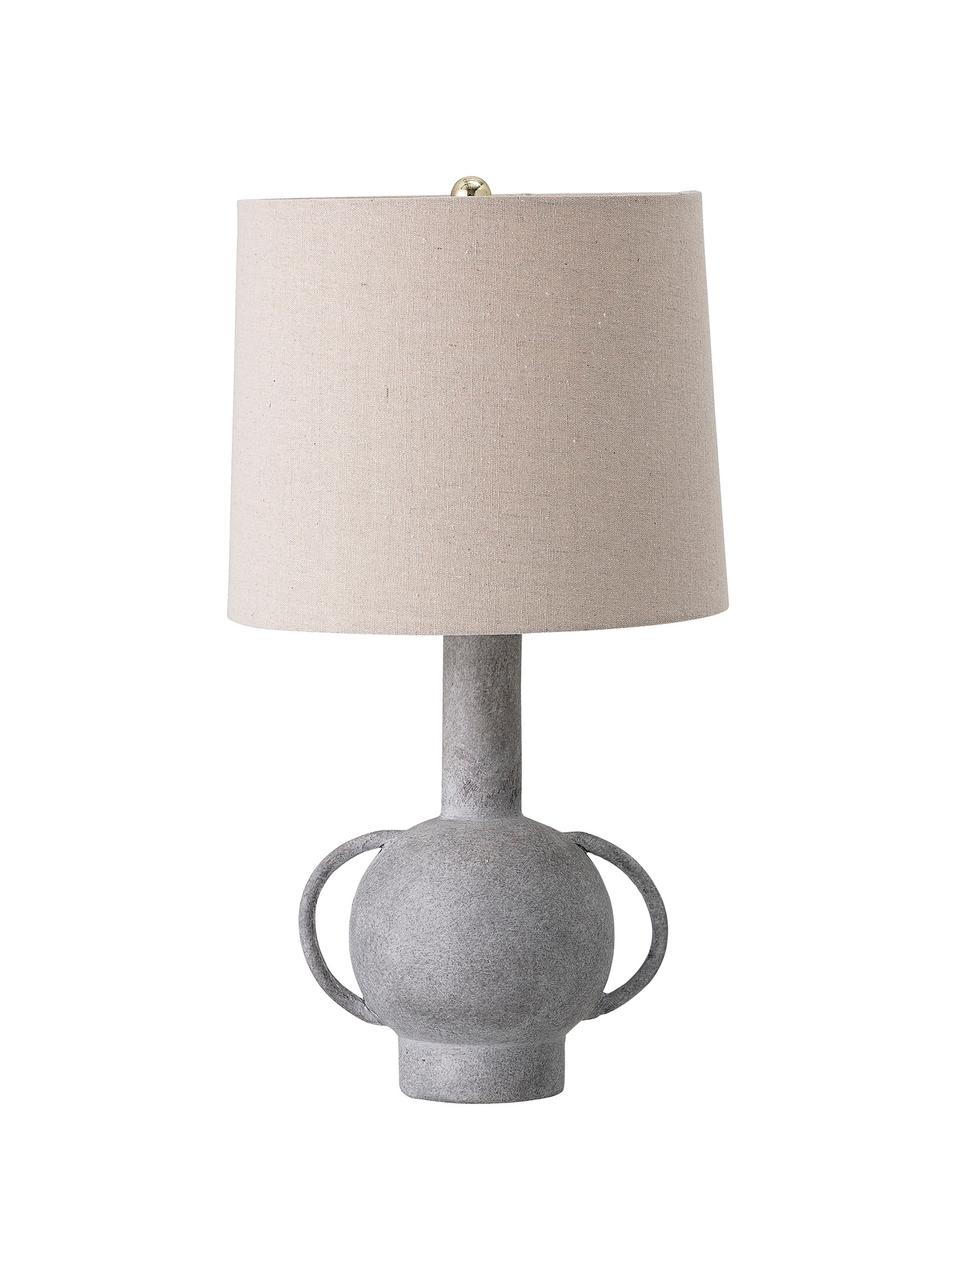 Lampada da tavolo con paralume in lino Ranya, Paralume: lino, Base della lampada: terracotta, Decorazione: metallo, Grigio, beige chiaro, Ø 31 x Alt. 59 cm